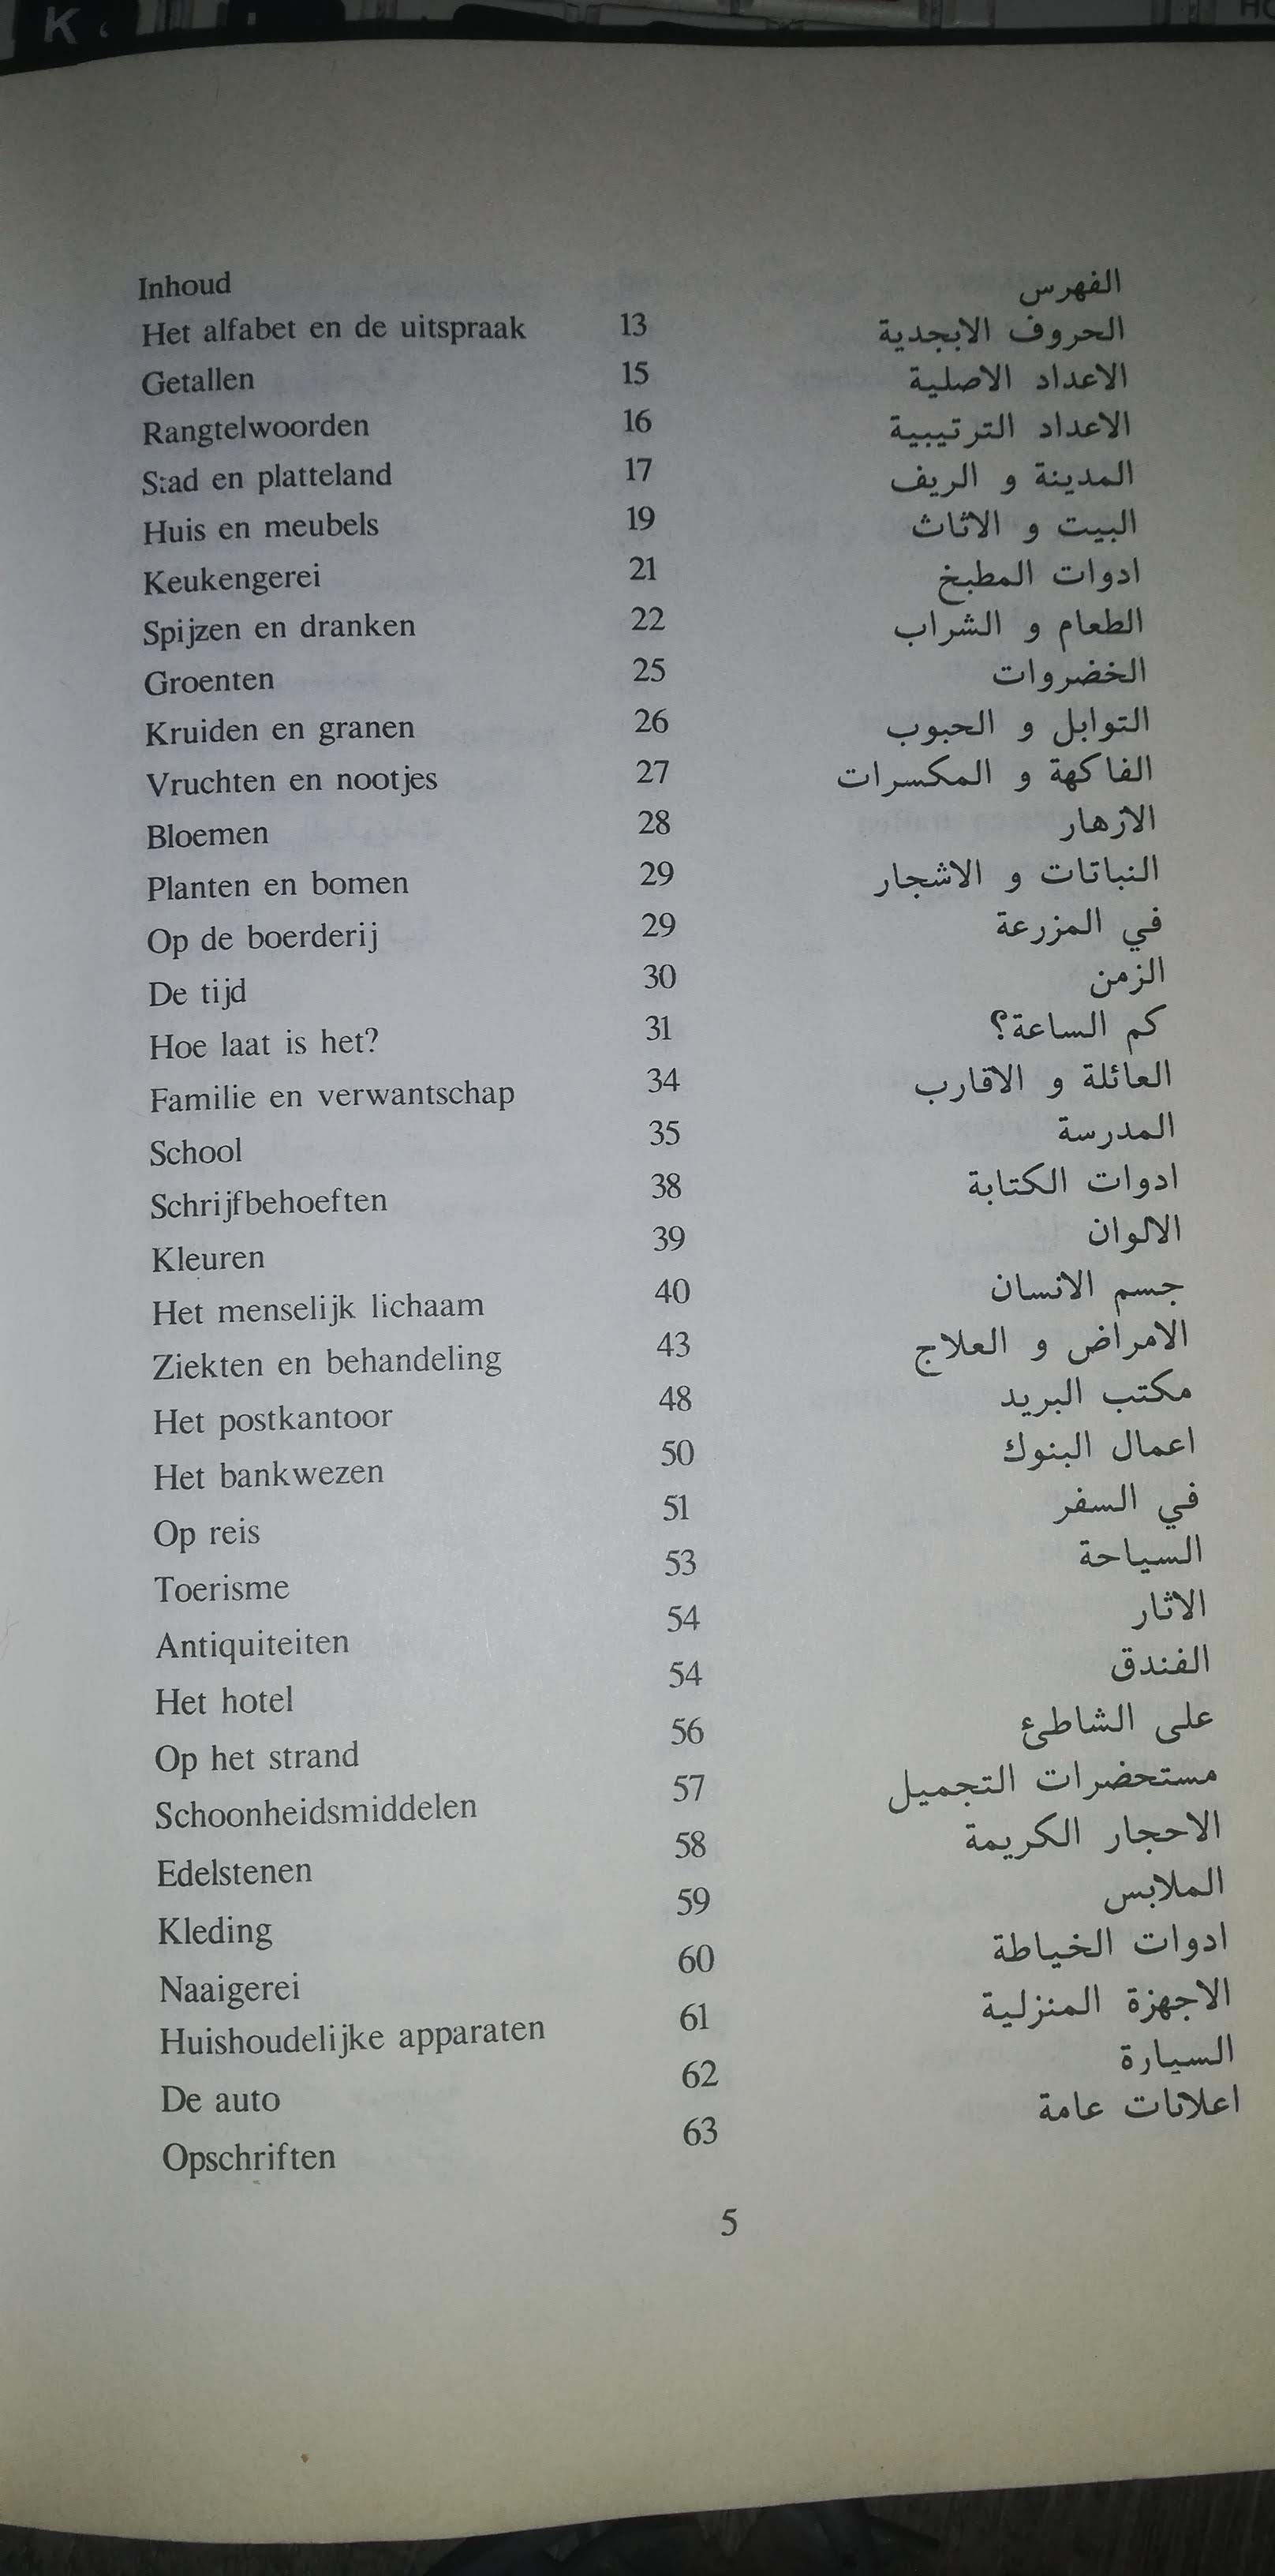 صفحة رقم 5 من كتاب تعلم اللغة الهولندية كلمات nederlandsleren